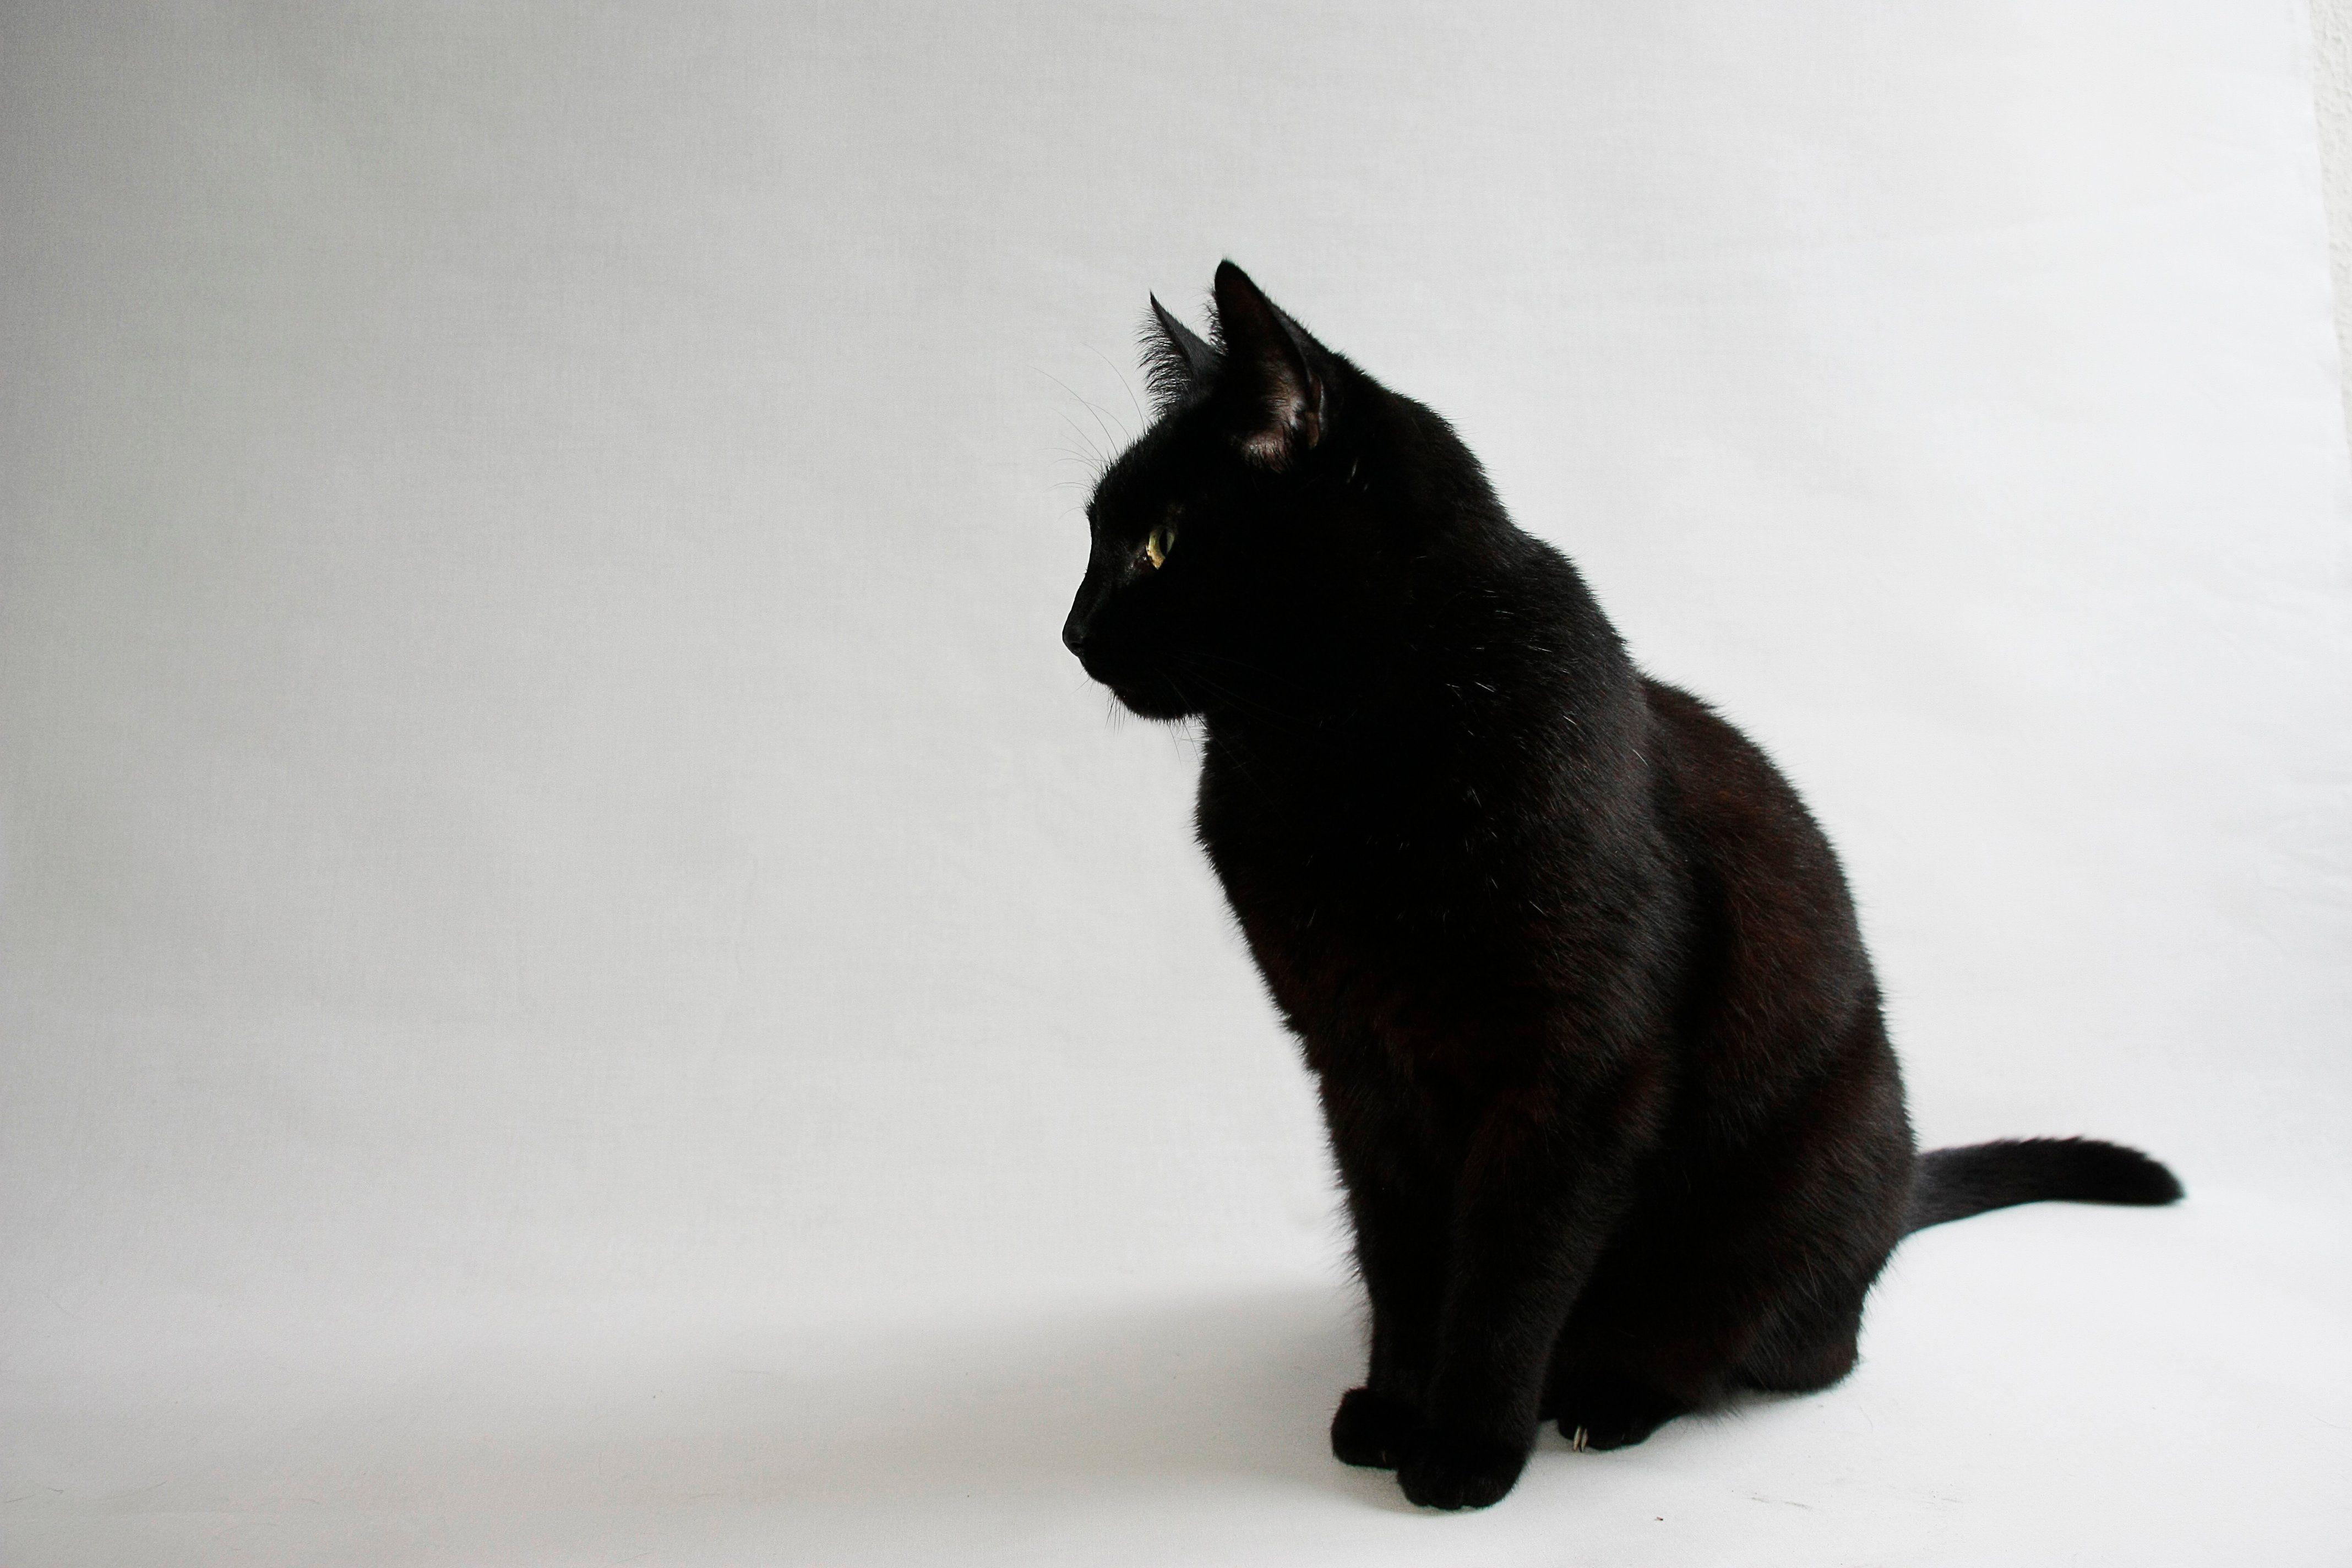 Kawaii Black Cat Wallpapers - Top Free Kawaii Black Cat Backgrounds